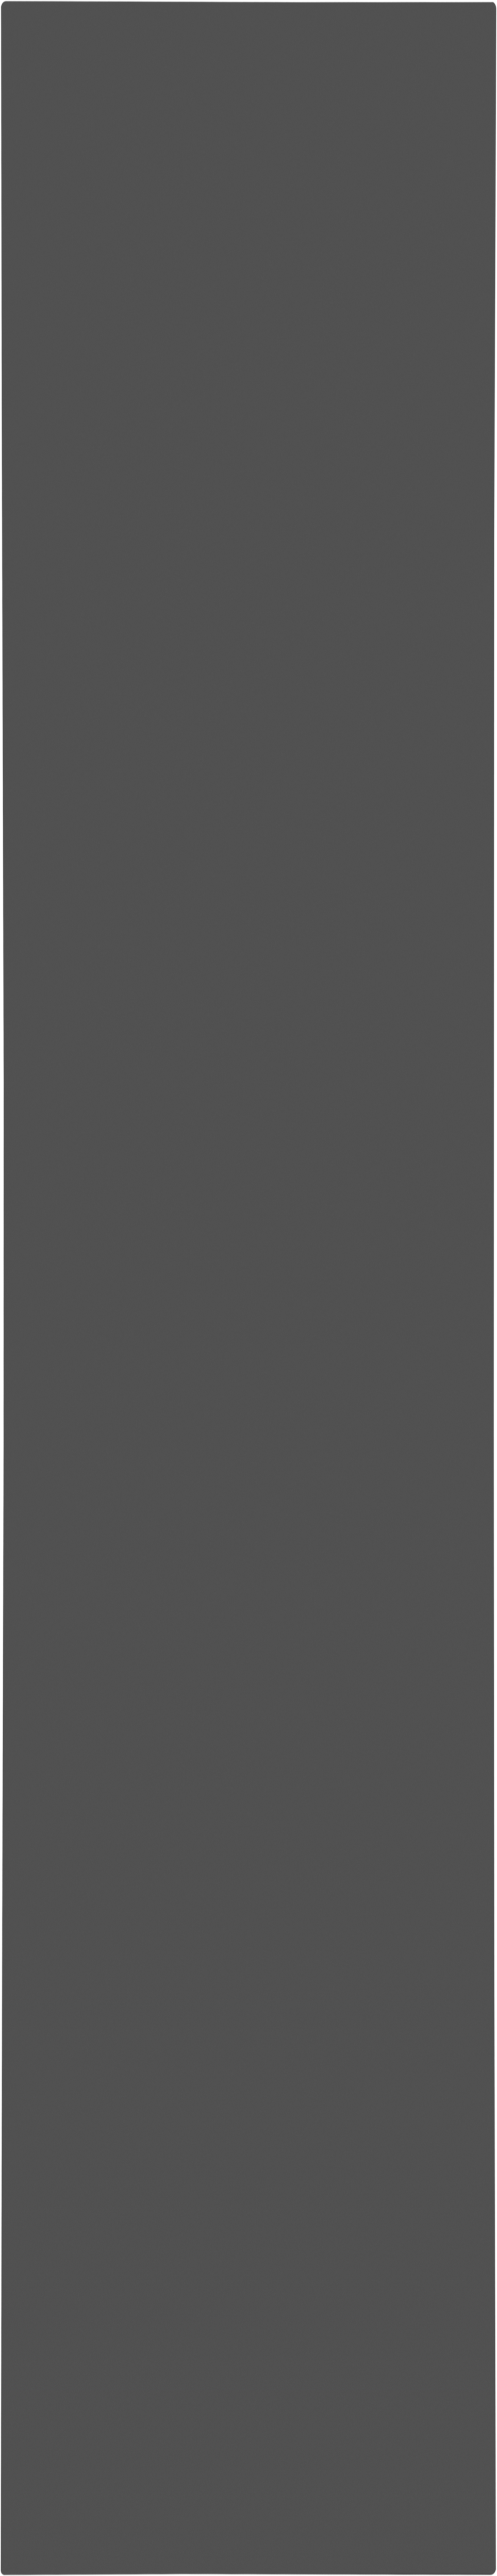 Puerta abatible armario lucerna gris oscuro 40x240x1,9 cm